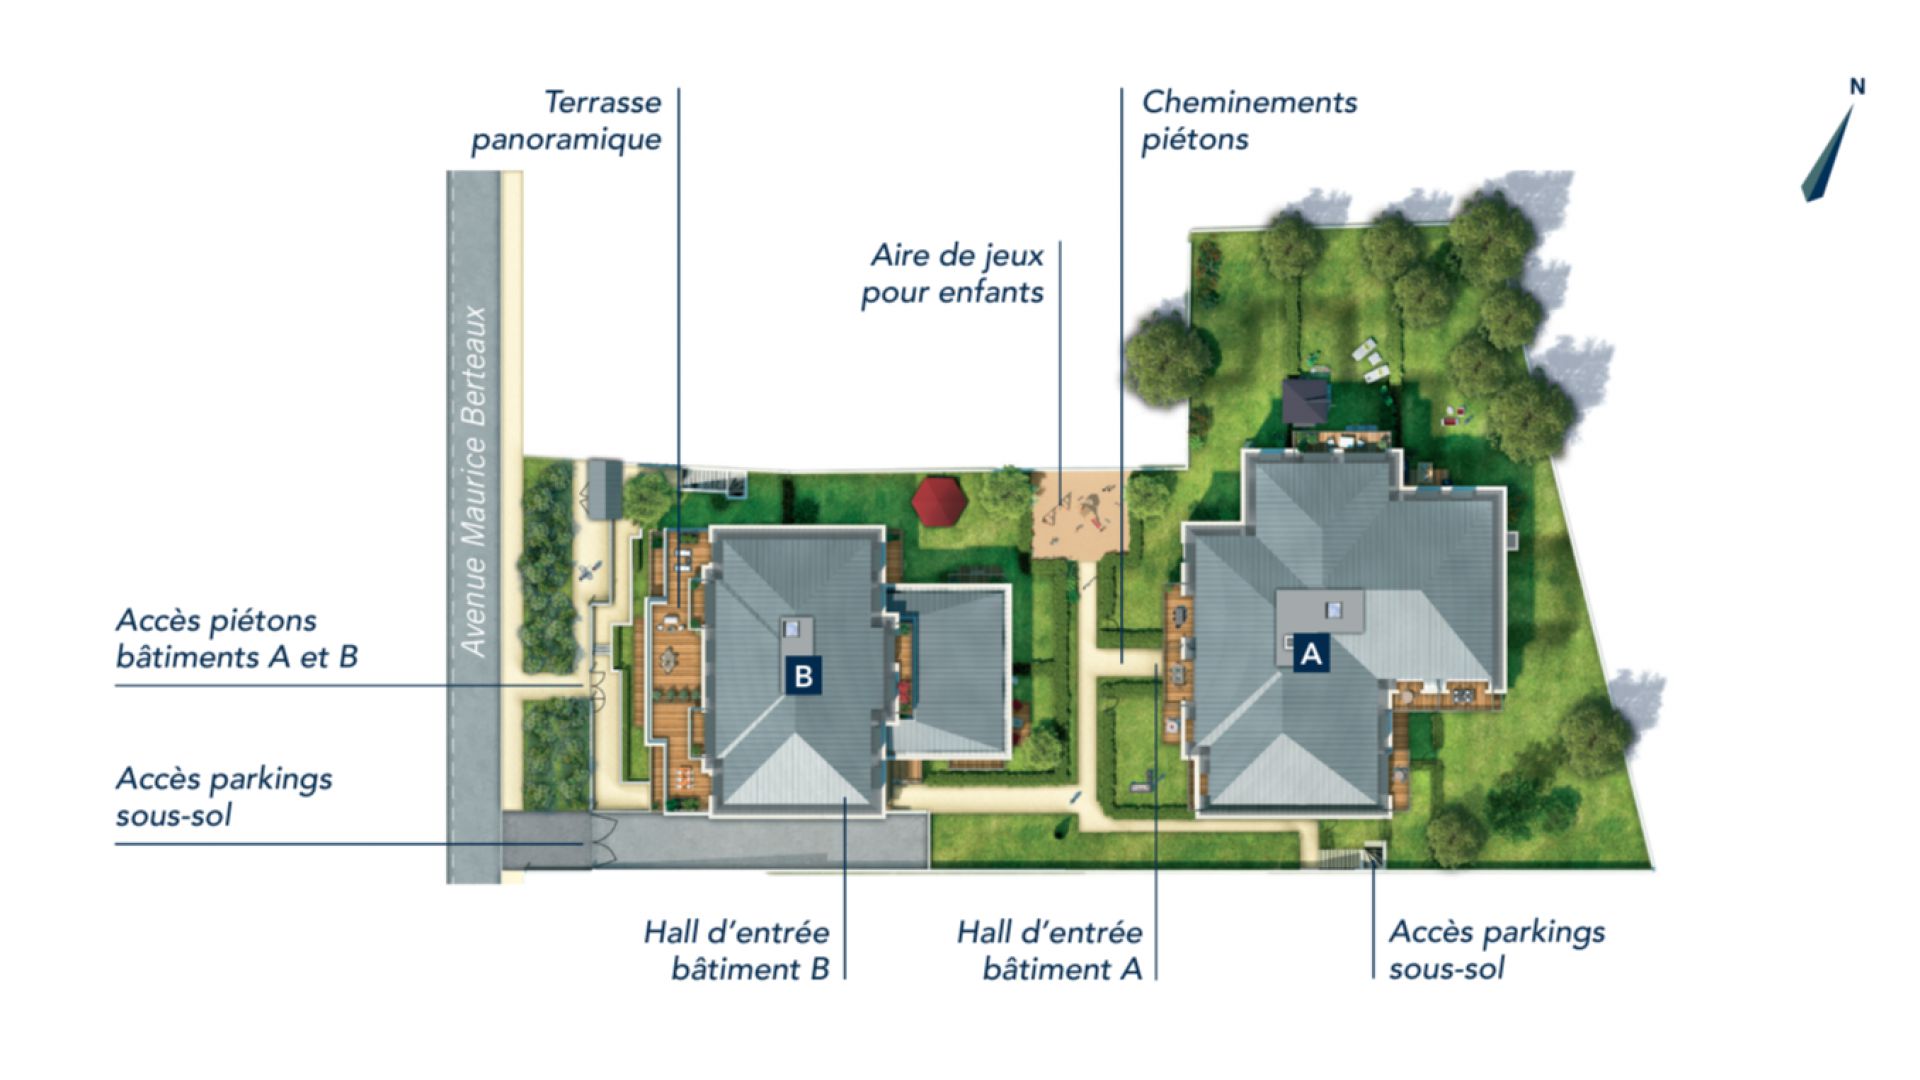 GreenCity immobilier - le plessis trévise - 94420 - Résidence Le Clos Vénéto - appartements du T1 bis au T3 plan de masse